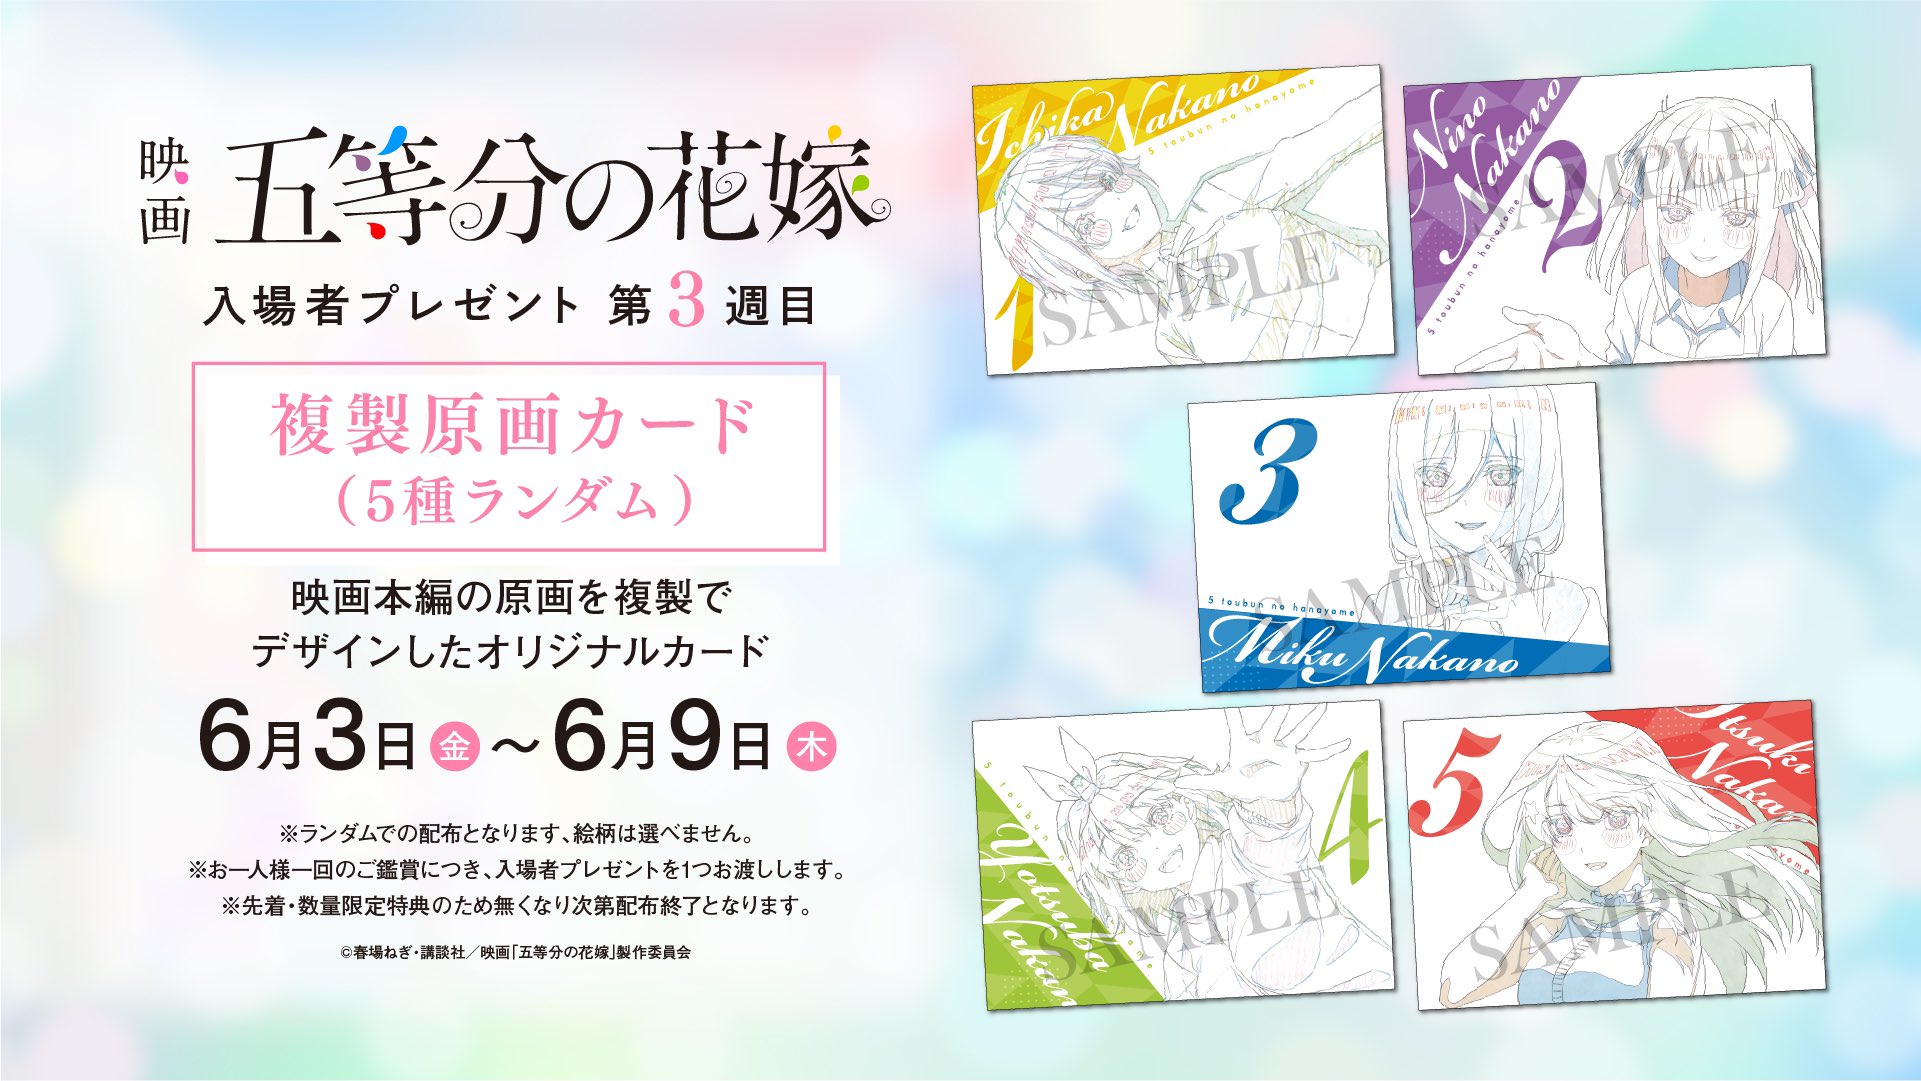 映画「五等分の花嫁」入場者特典 第3弾 複製原画カード 6月3日より登場!